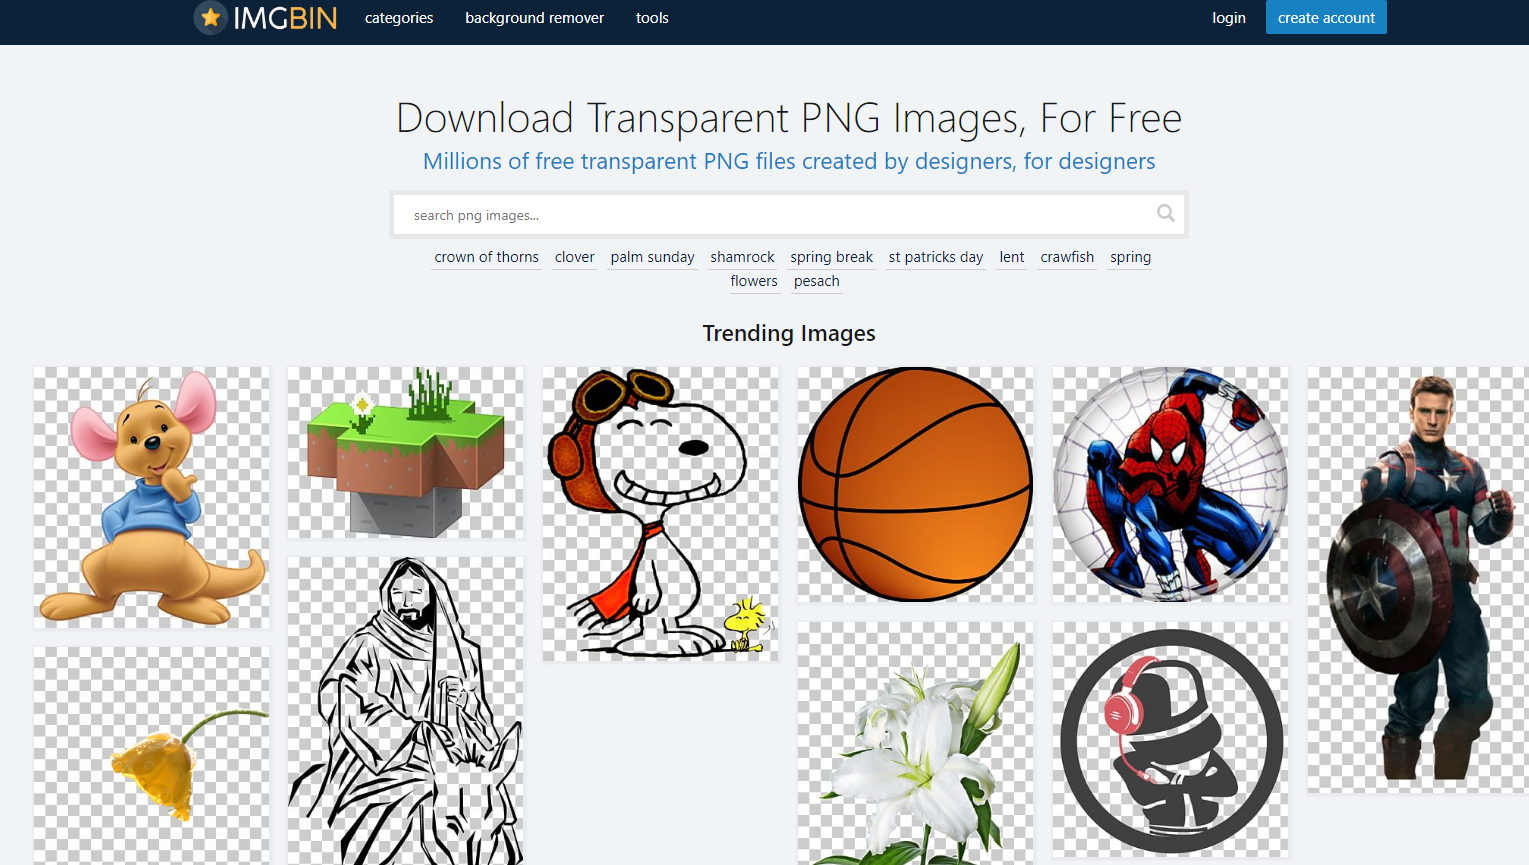 IMGBIN：由设计师创建的数百万个免费透明 PNG 图片素材